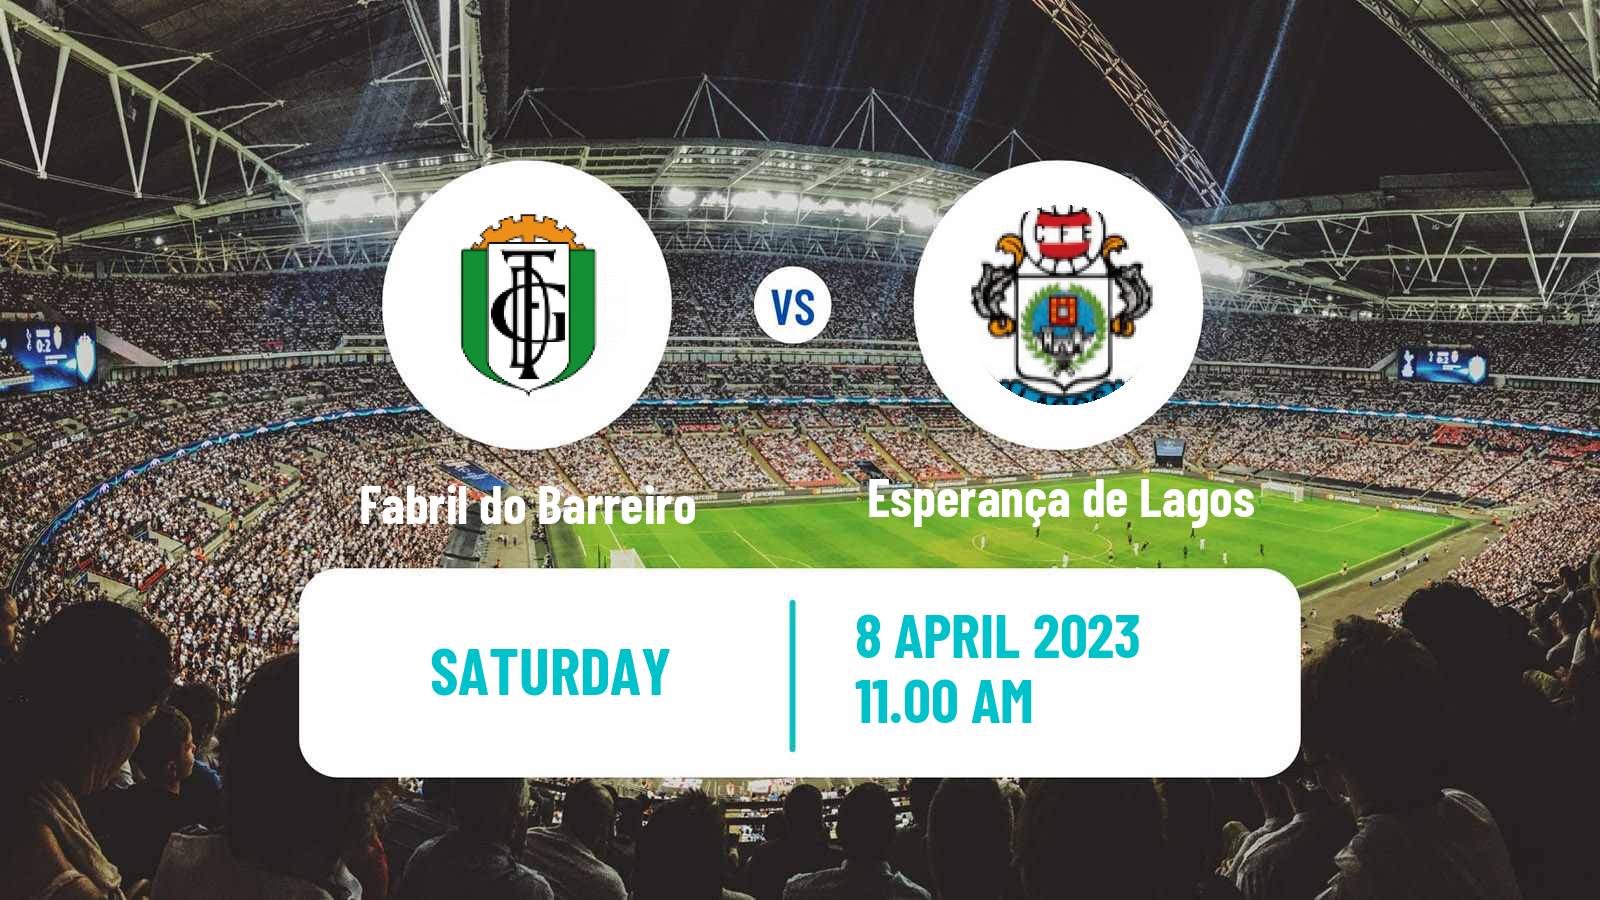 Soccer Campeonato de Portugal Fabril do Barreiro - Esperança de Lagos